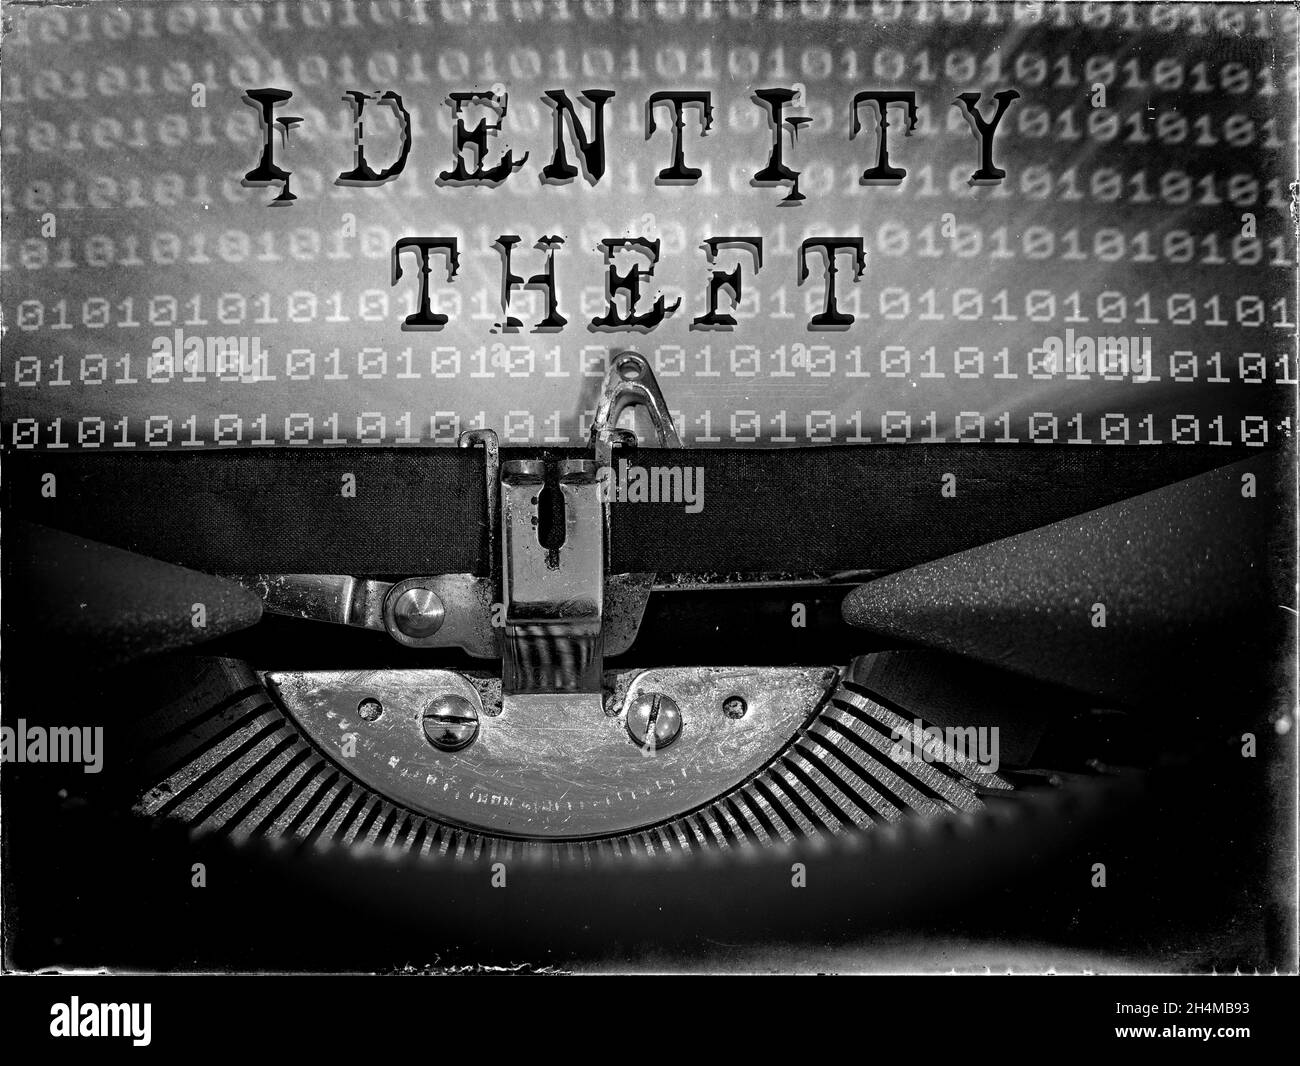 El robo de identidad se muestra en una máquina de escribir vintage con un fondo de código binario Foto de stock